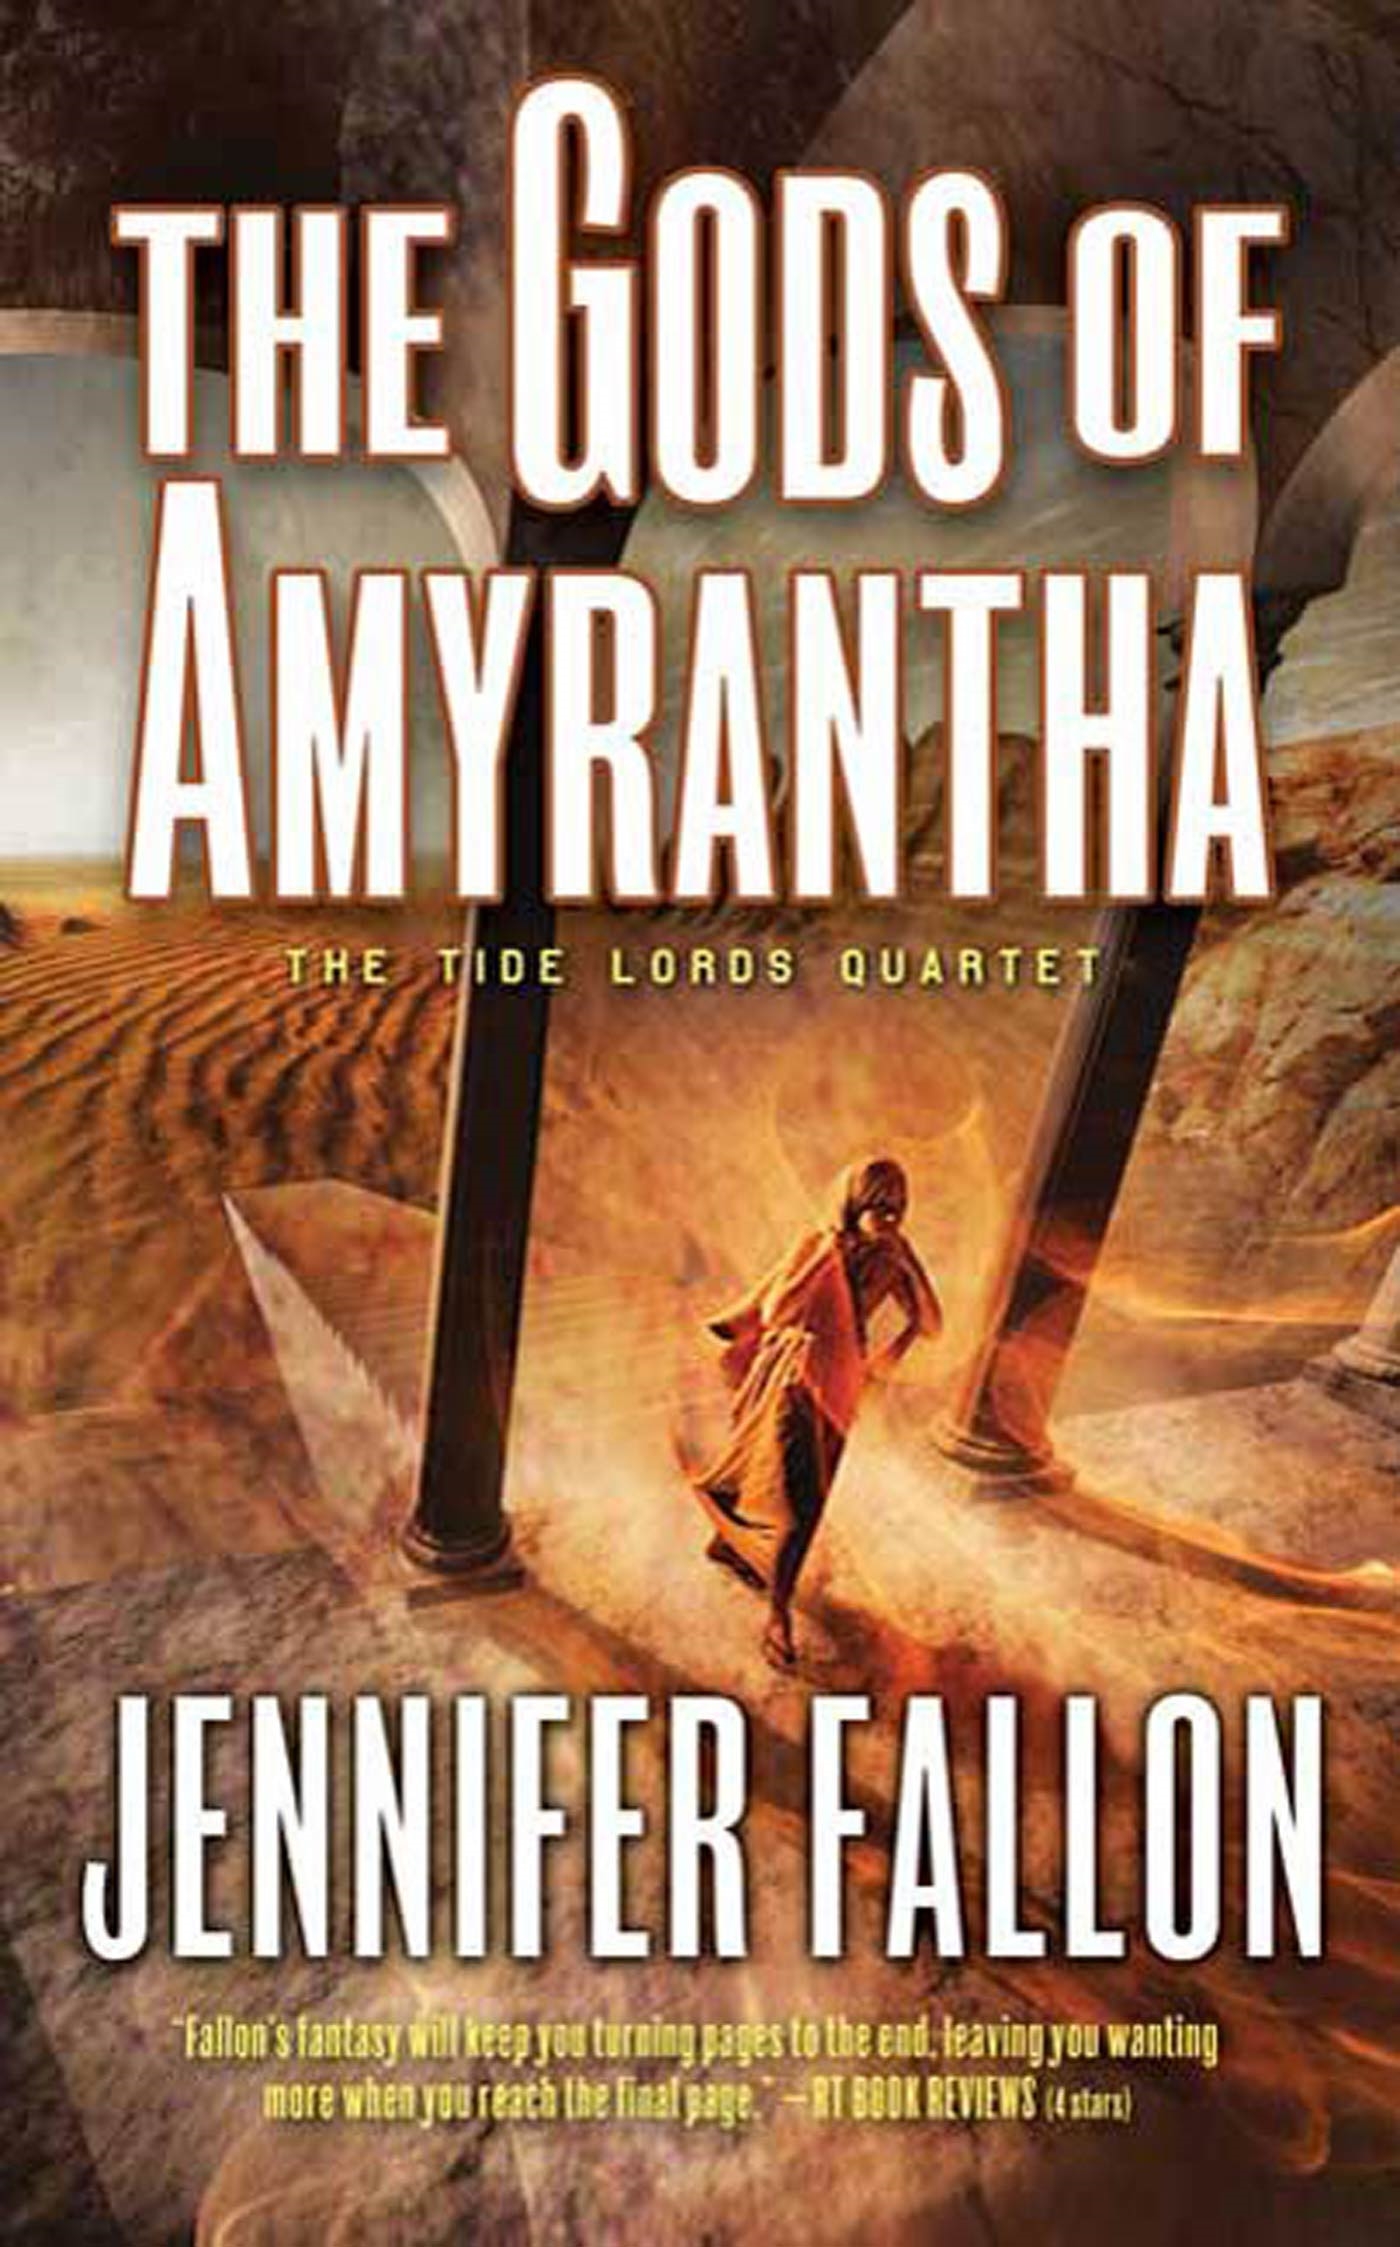 The Gods of Amyrantha : The Tide Lords Quartet by Jennifer Fallon